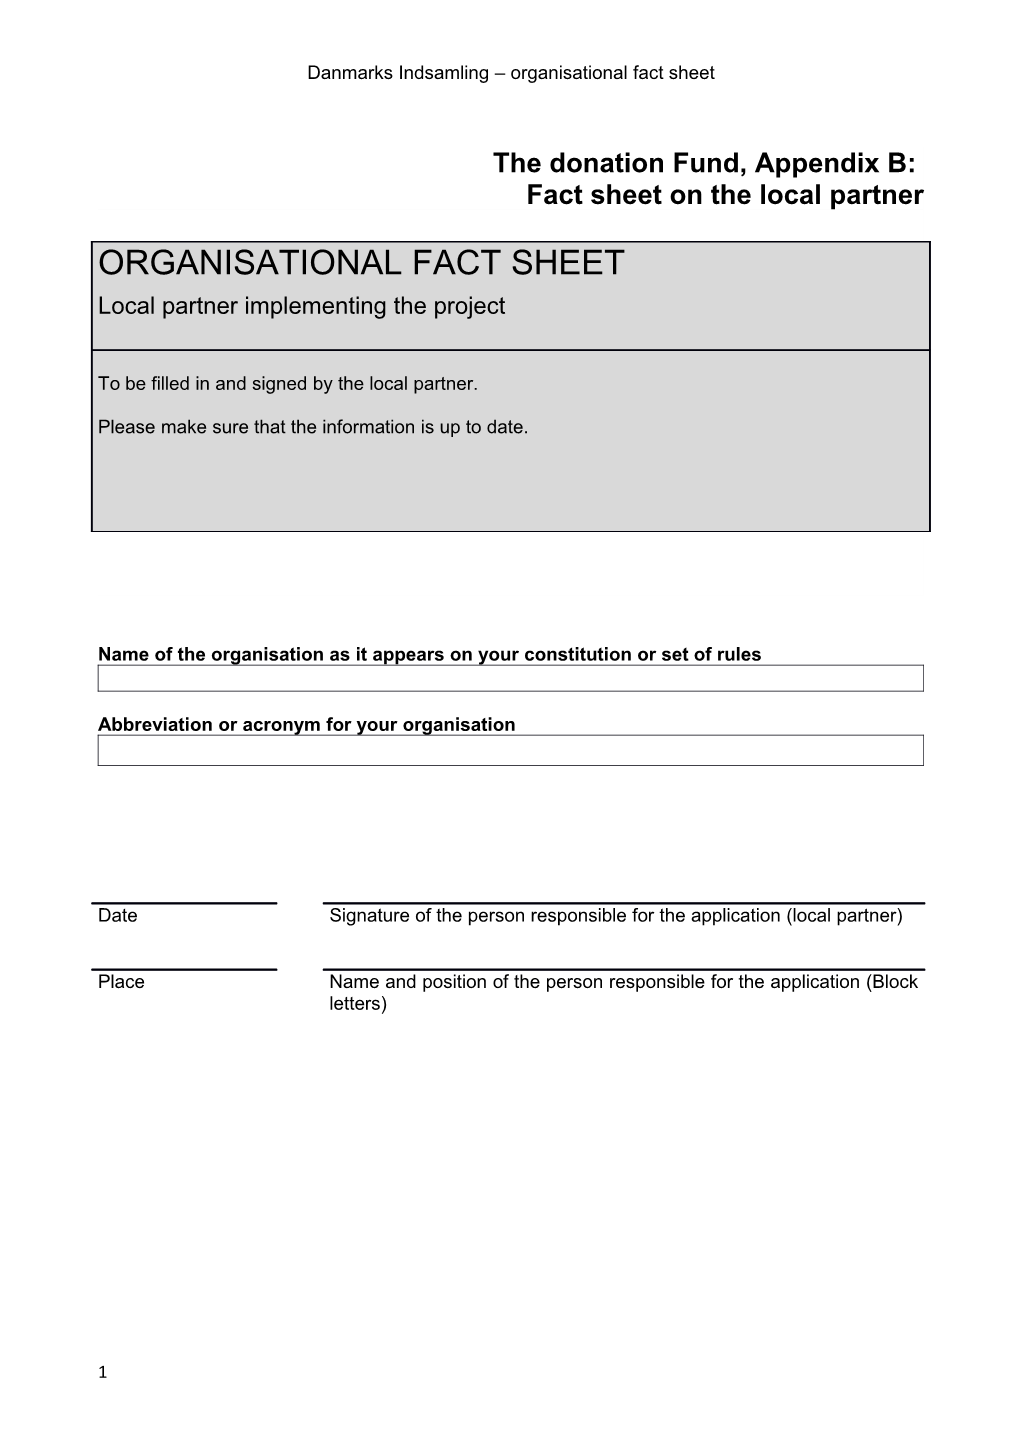 Danmarks Indsamling Organisational Fact Sheet